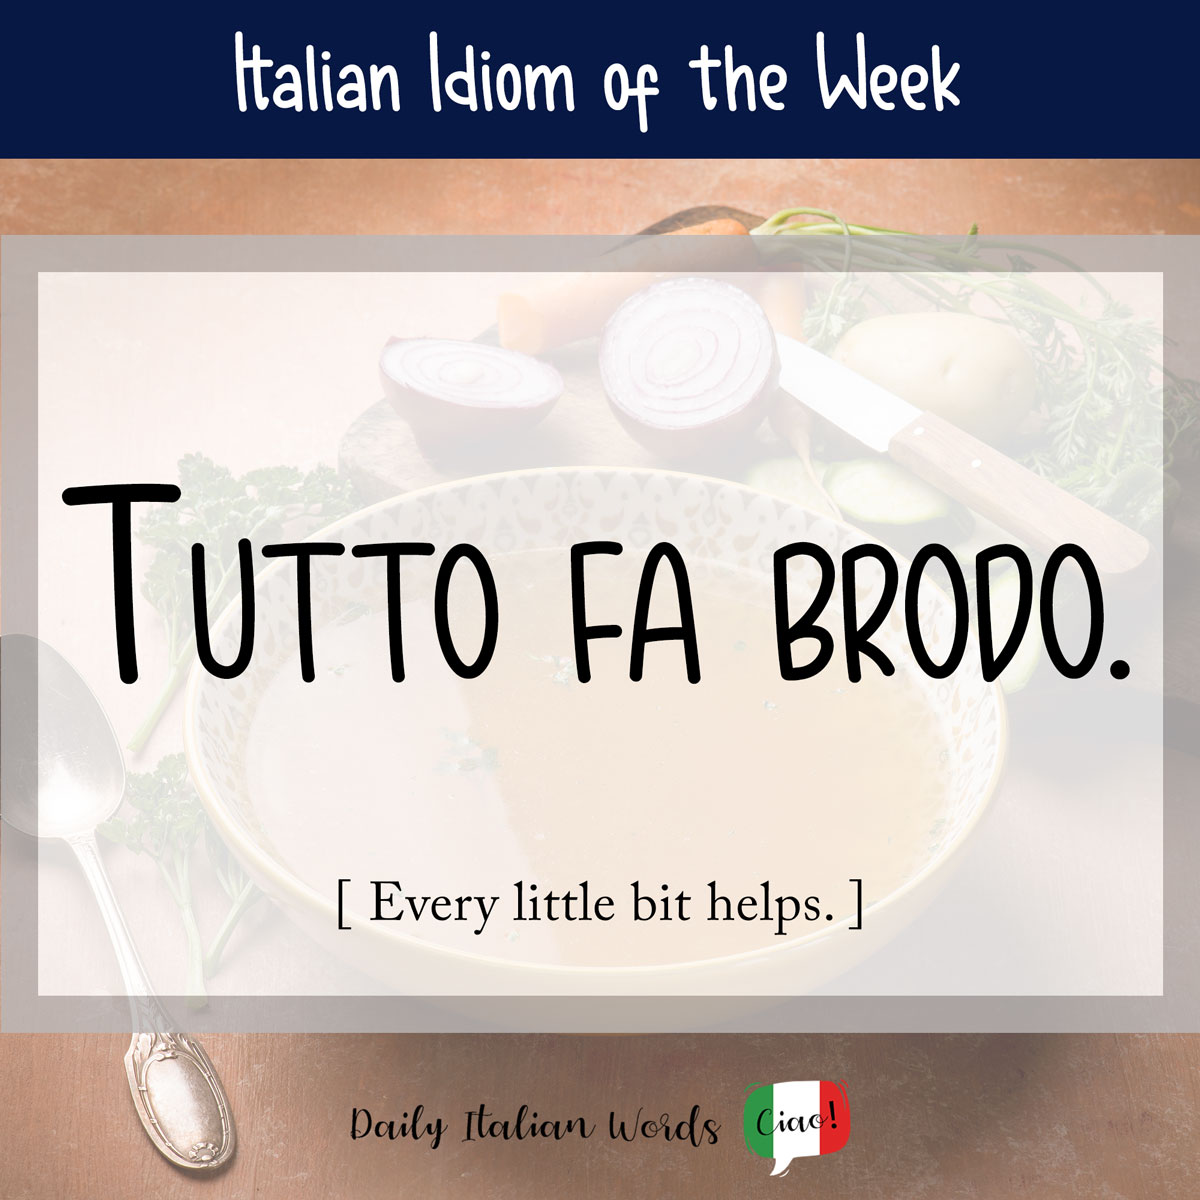 Italian idiom: Tutto fa brodo (A little bit helps)